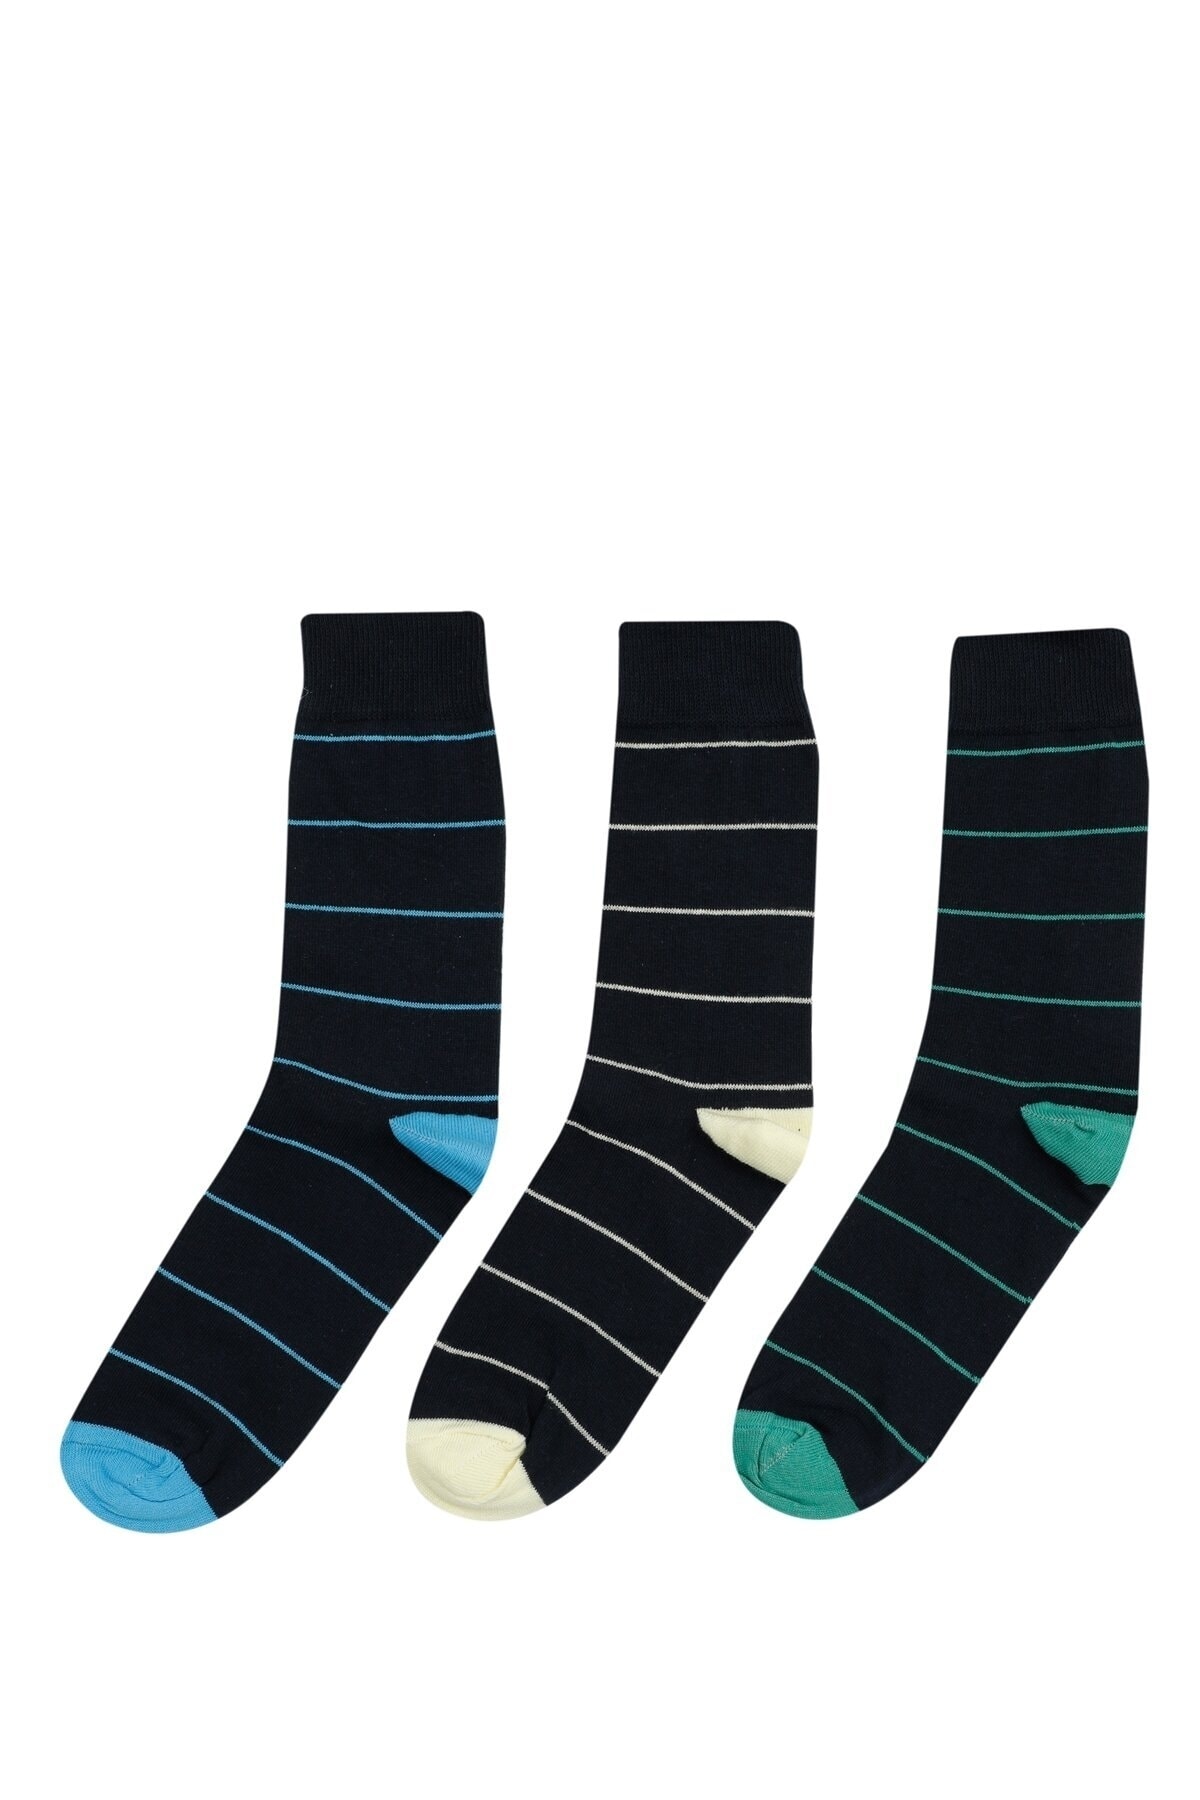 Polaris Color Strıpe 3 Lu Skt-m 2 Lacivert Erkek Soket Çorap